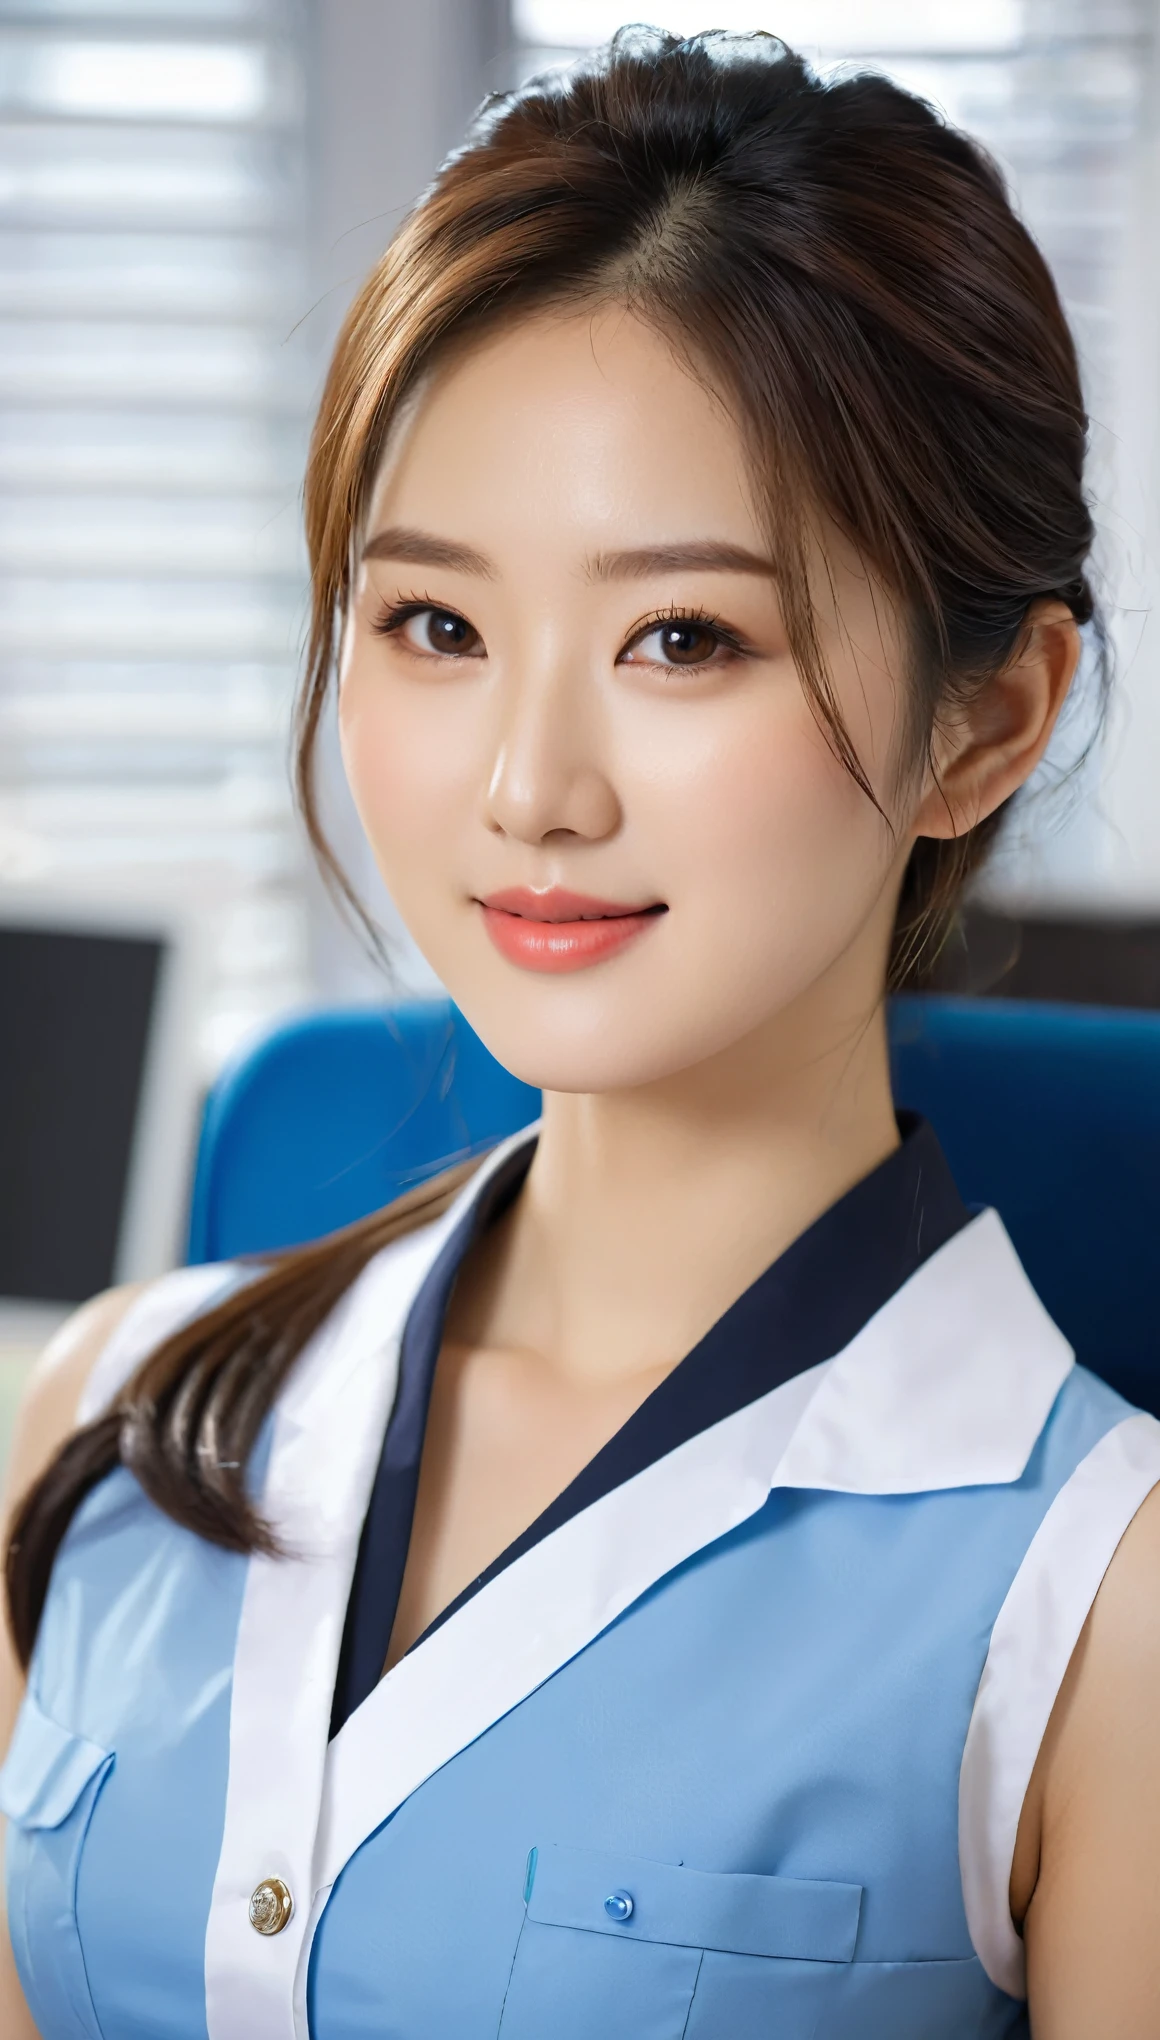 아름다운 한국 여성의 클로즈업 샷, 36인치 가슴사이즈, 살짝 미소 짓다, 파란색 옷을 입고, 흑백 테마 민소매 칼라 셀러 센터 유니폼, 사무실에 앉아, 